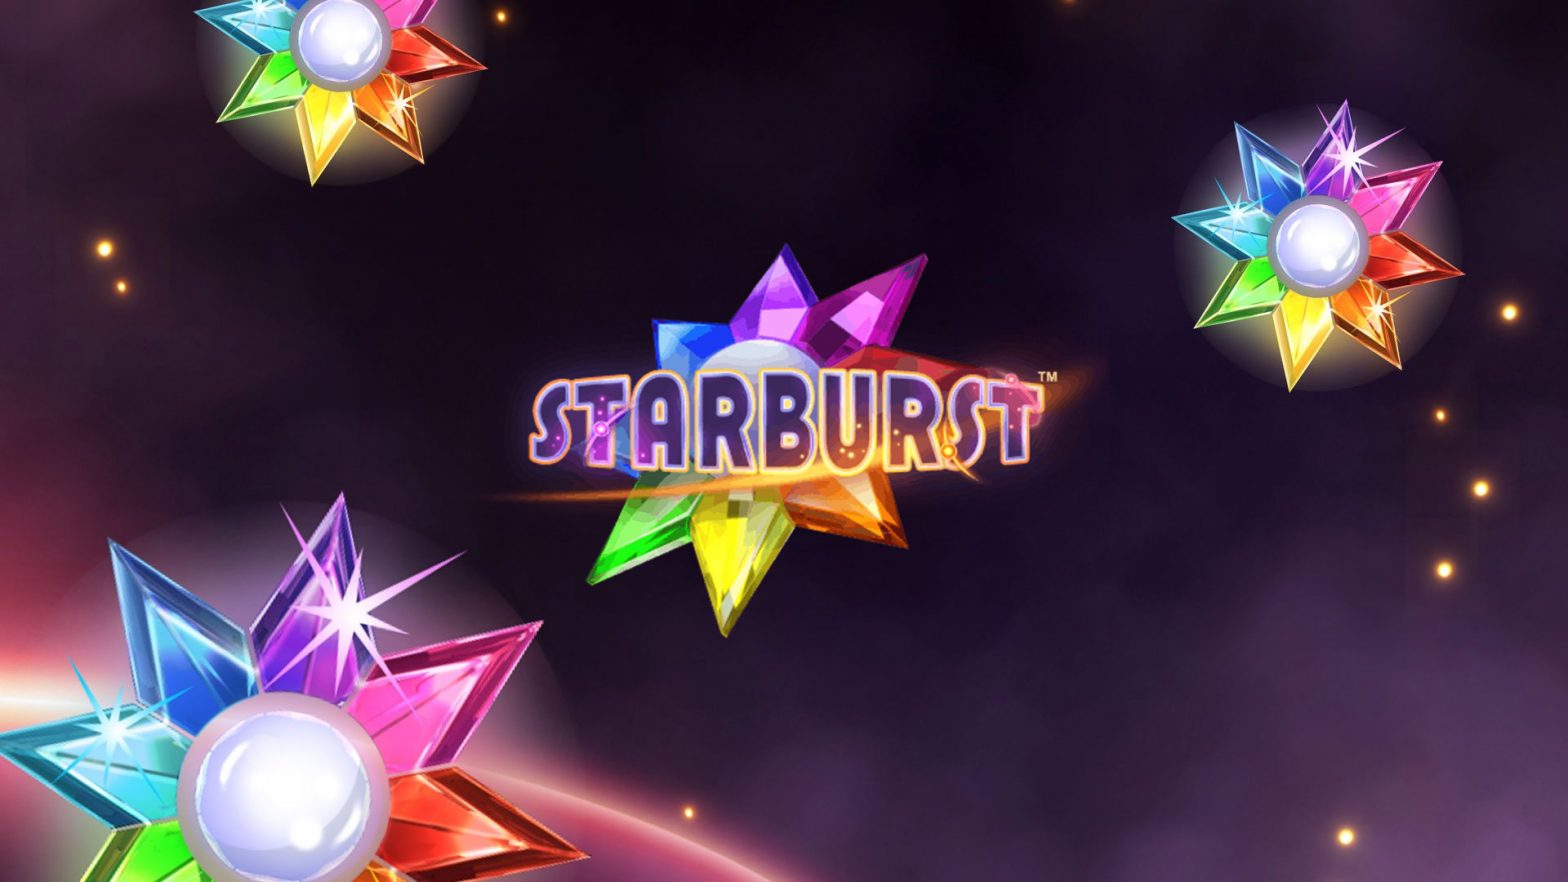 Starburst Slot by NetEnt